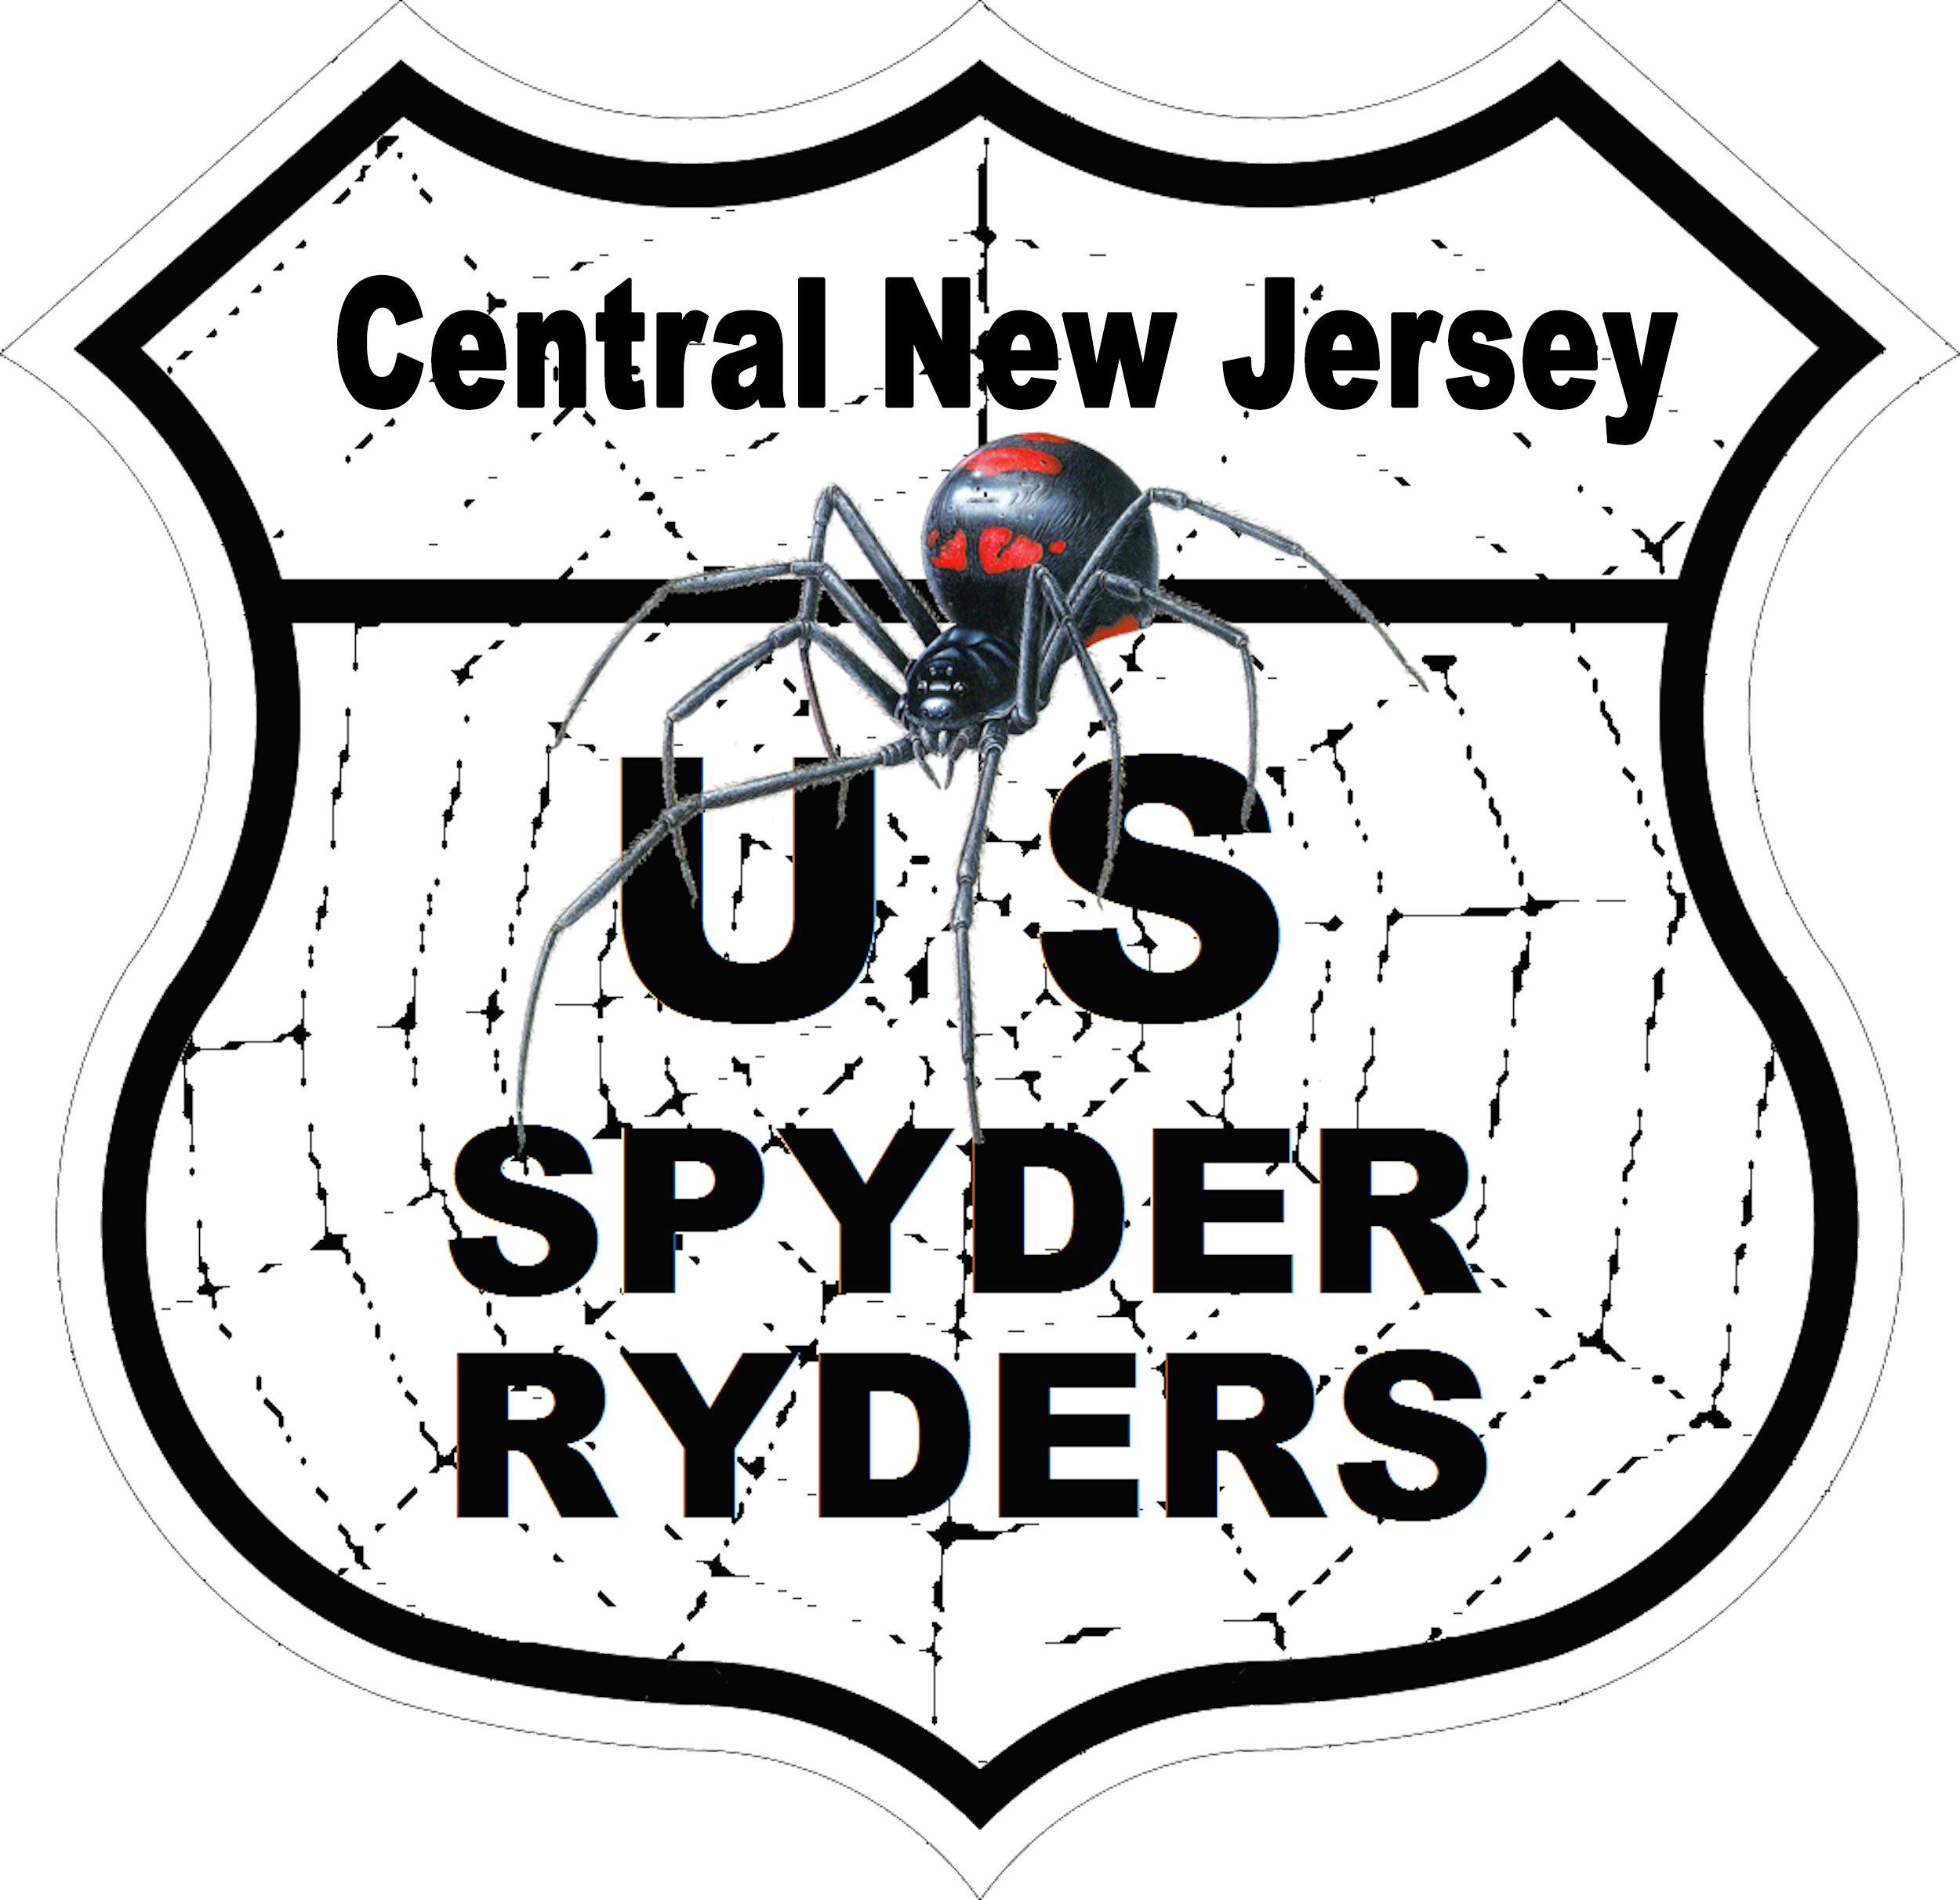 US_Spyder_Ryder_NJ Central New Jersey.png